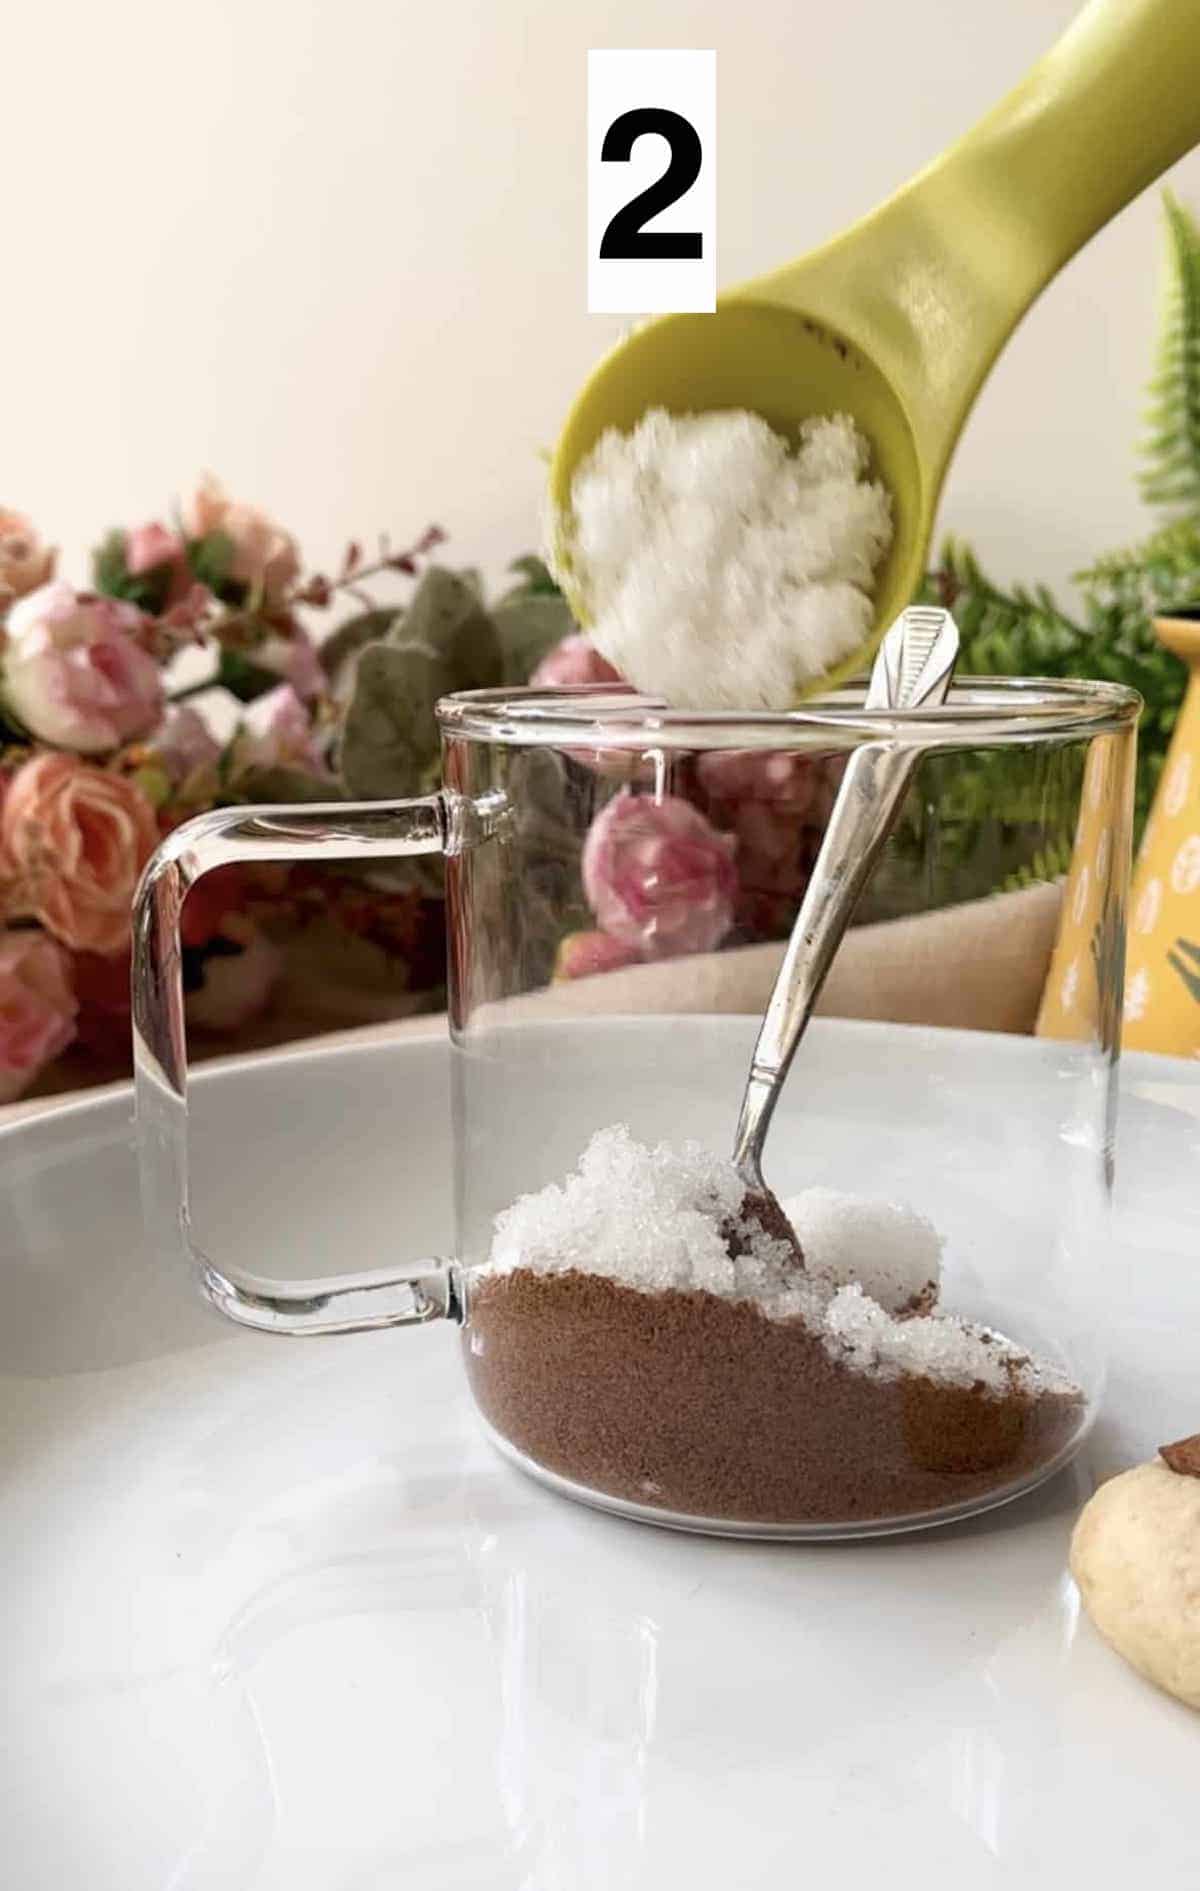 Adding white sugar to milo powder in a glass cup.